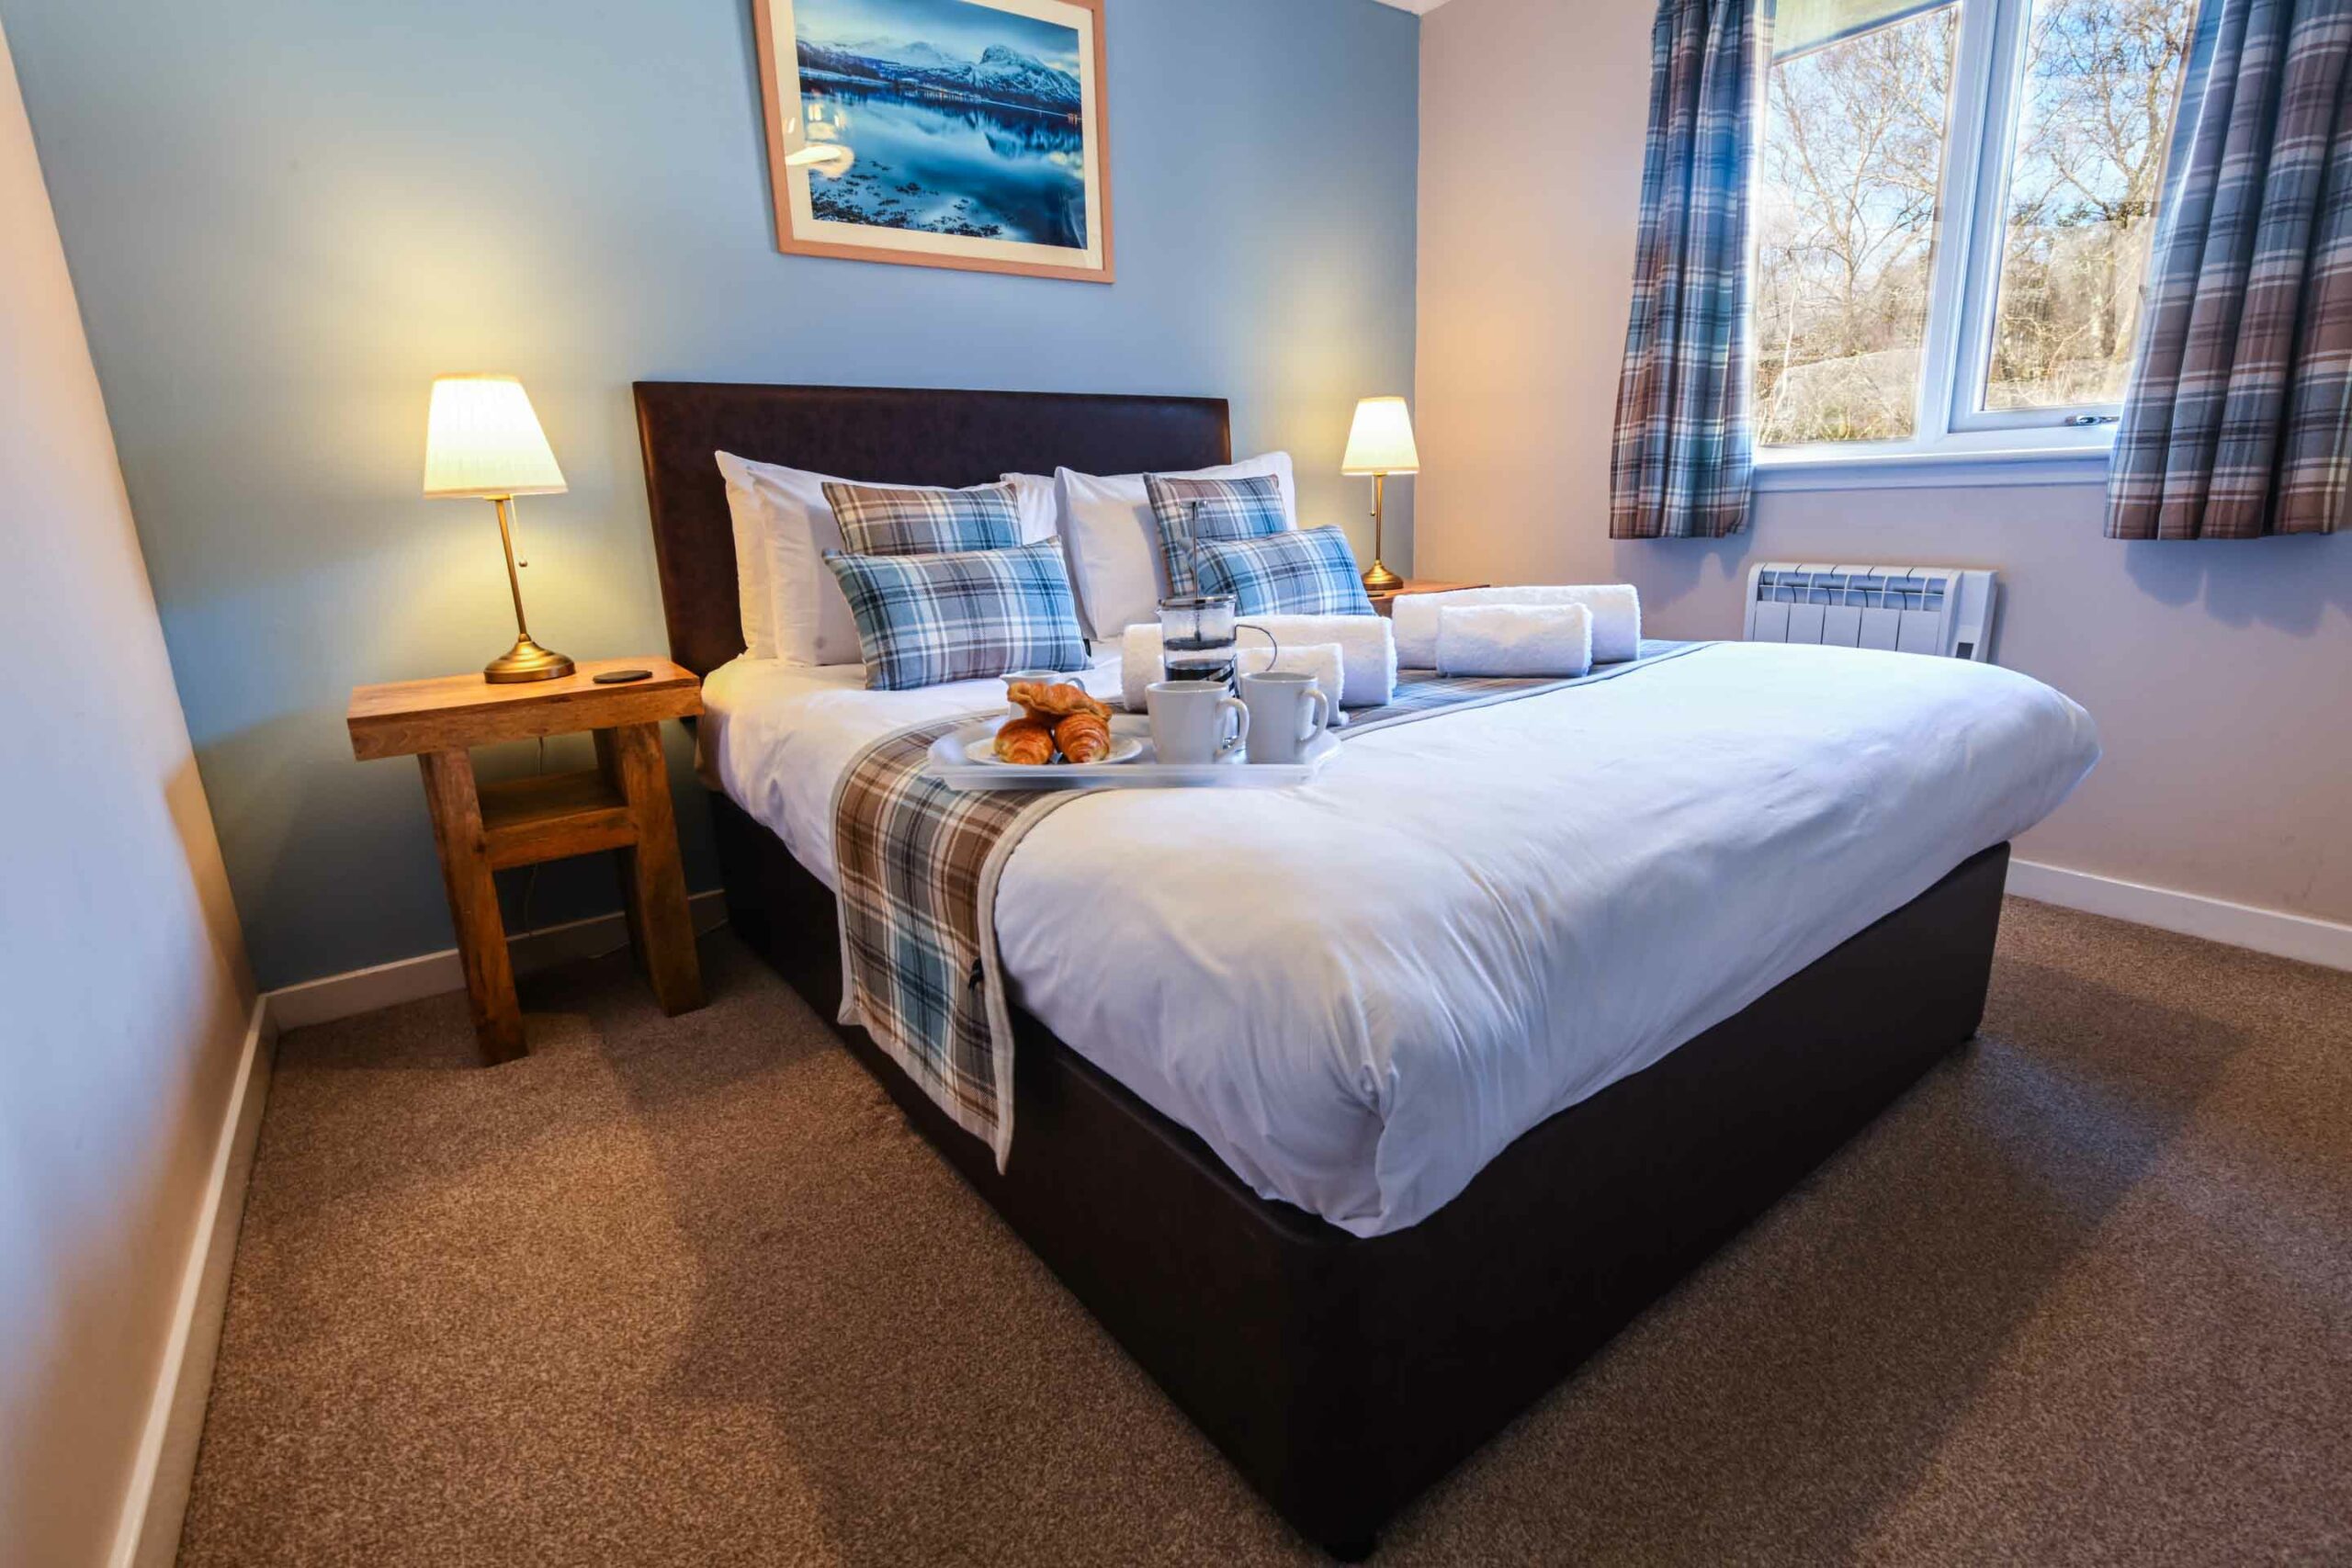 Enjoy breakfast in bed in our luxury self-catering Lodges near Glencoe.